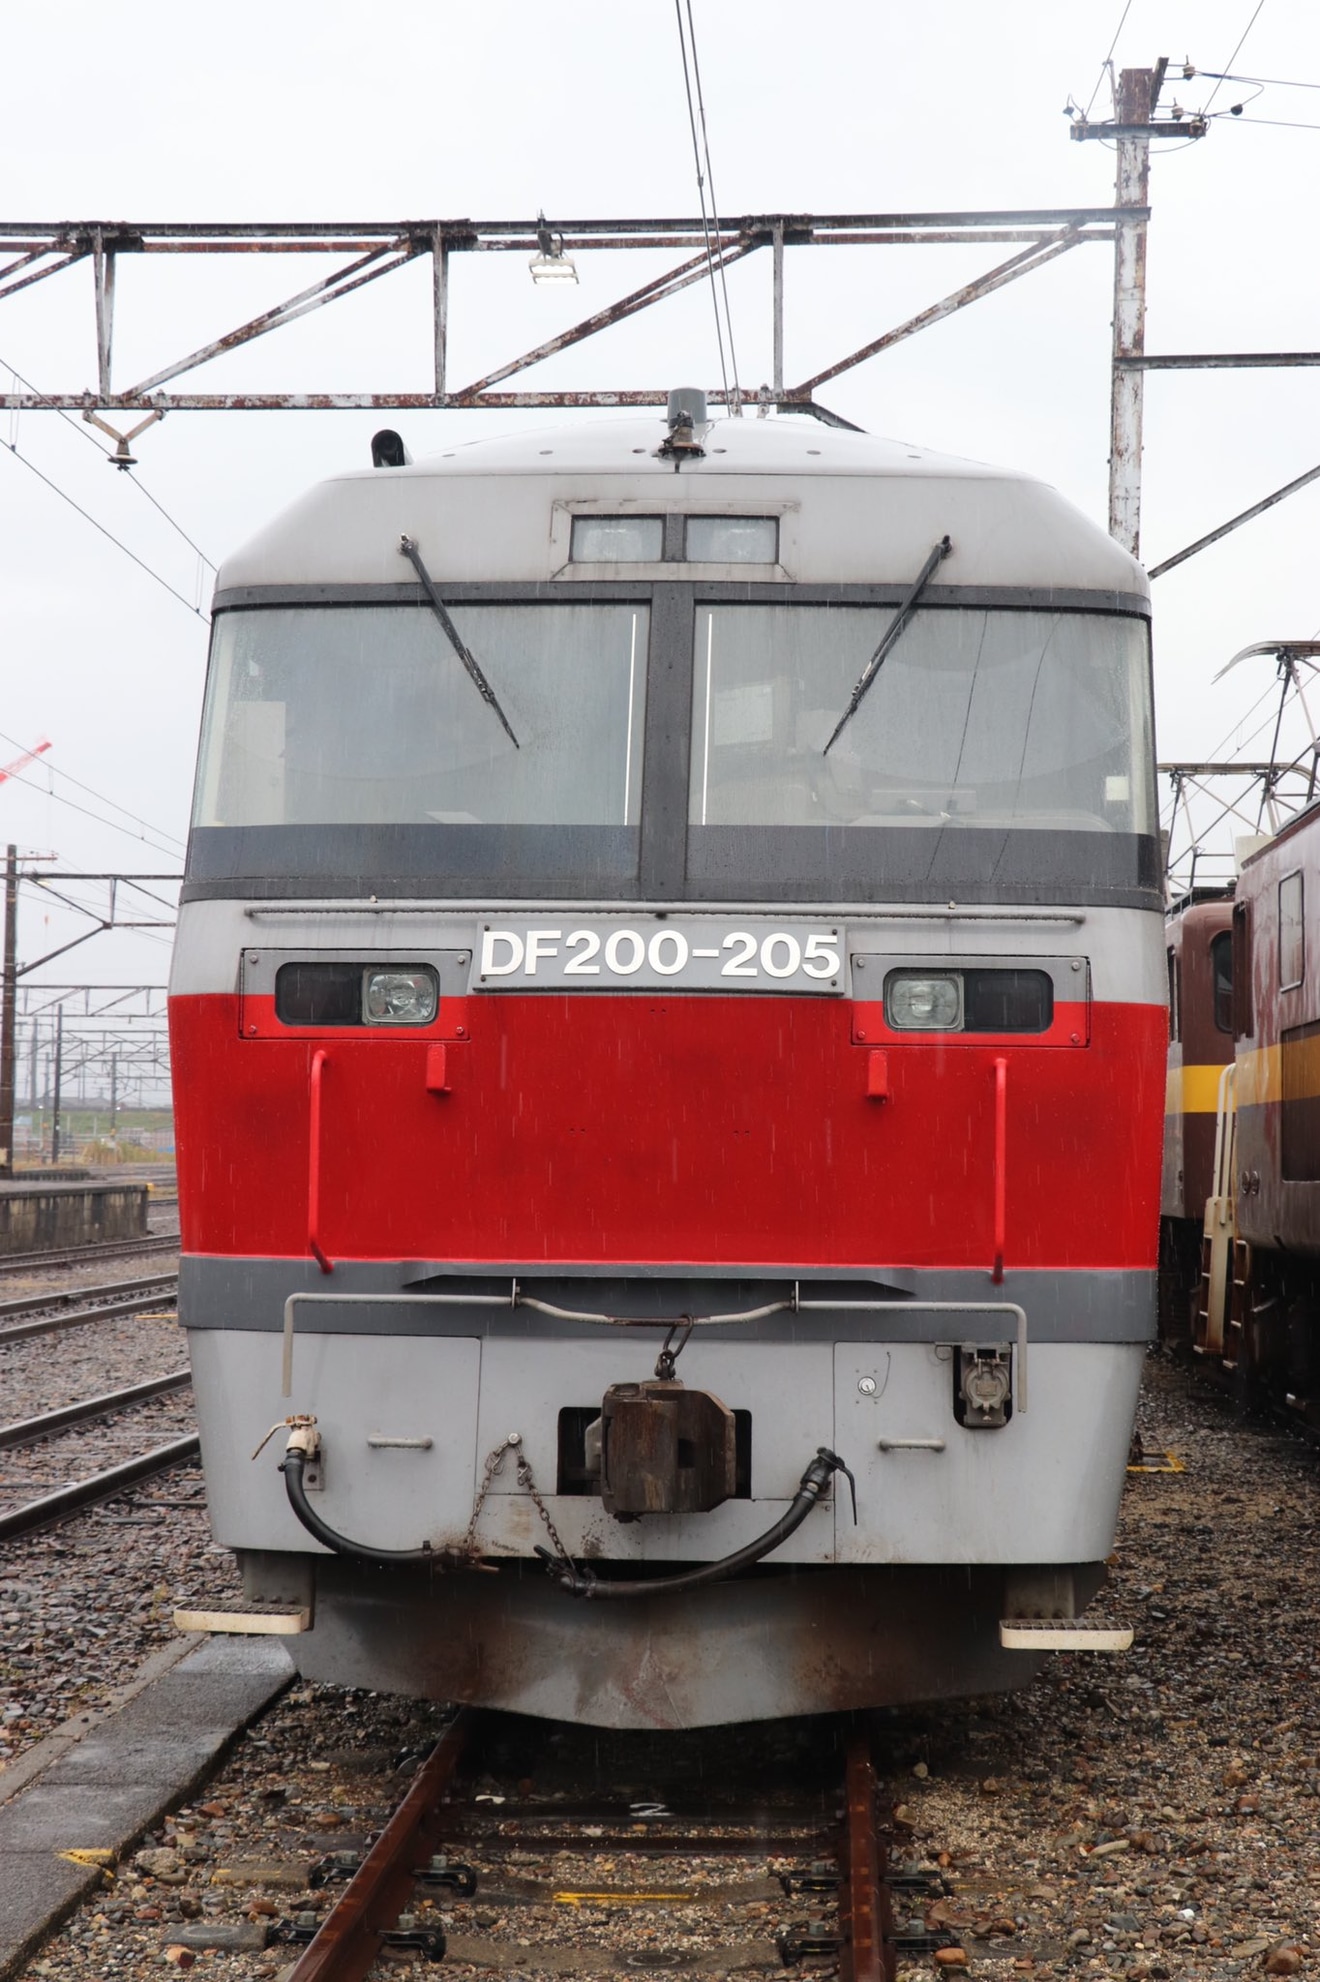 【JR貨】「さわやかウォーキング」の「鉄道満喫コース」富田駅で機関車展示の拡大写真